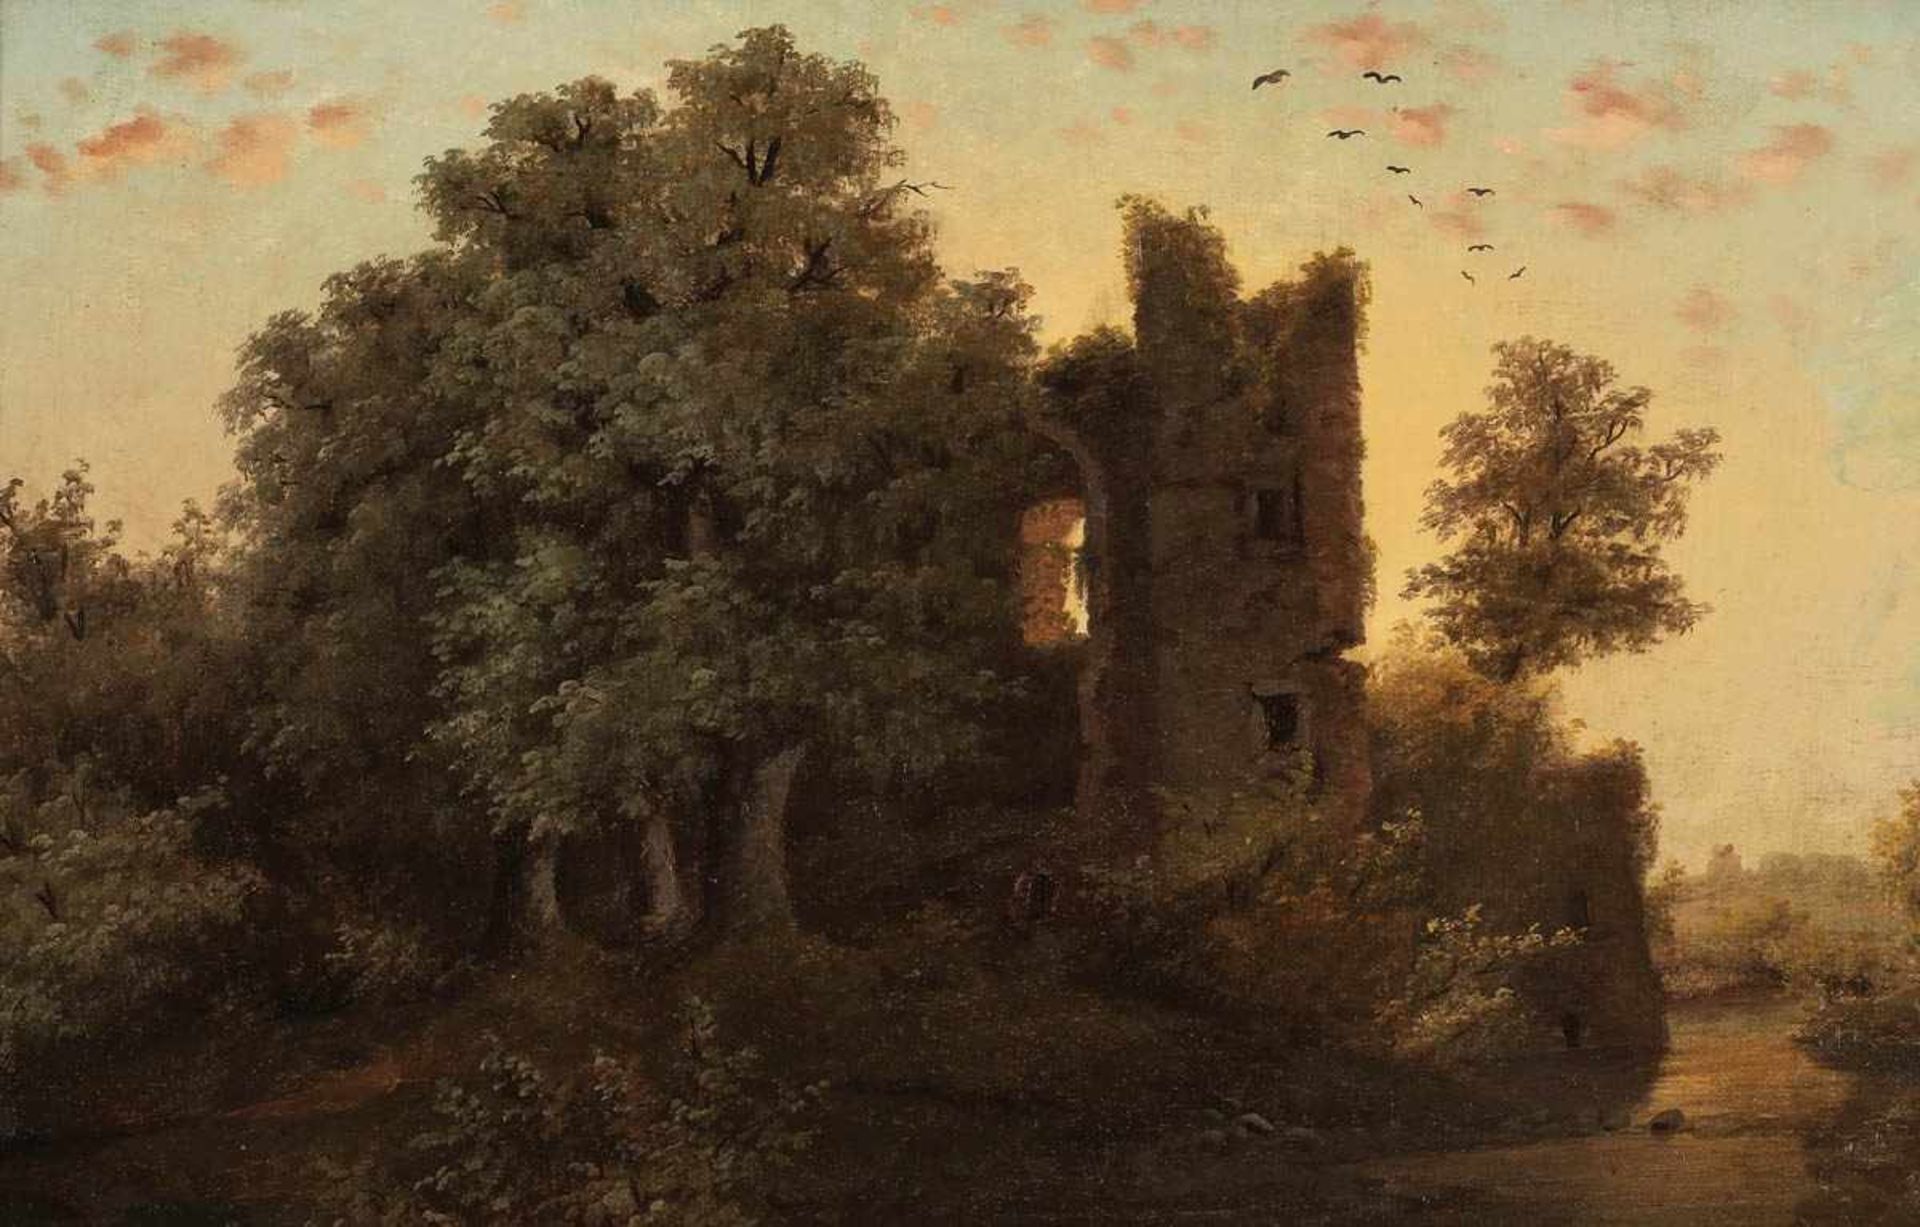 Künstler des 19. Jahrhunderts - Ruine in romantischer Abendstimmung - Öl/Lwd. Randdoubl. 33,5 x 47